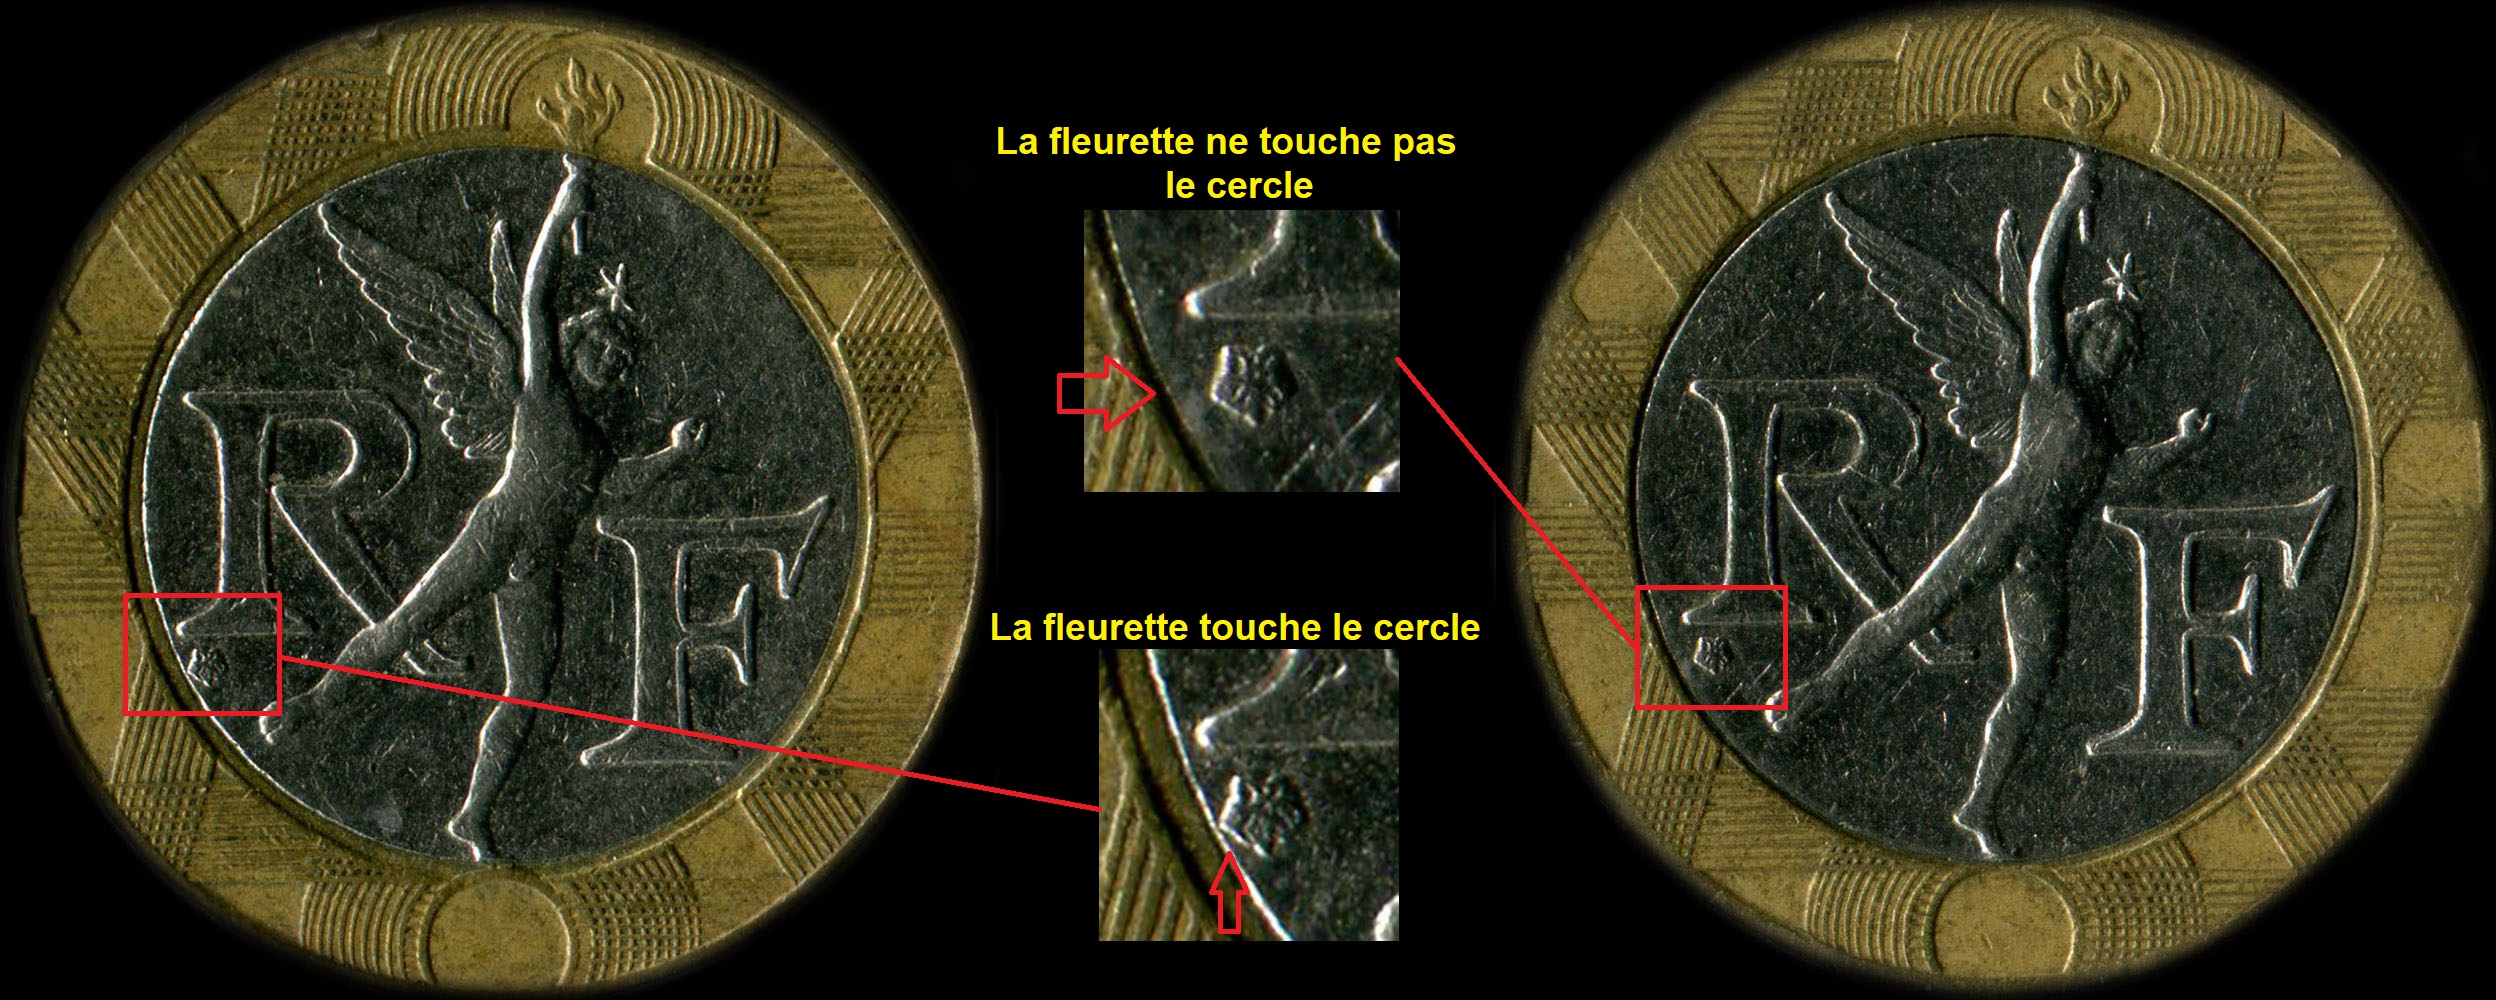 Variante fleurette de Pessac touche ou pas le cercle sur 10 francs Génie 1991